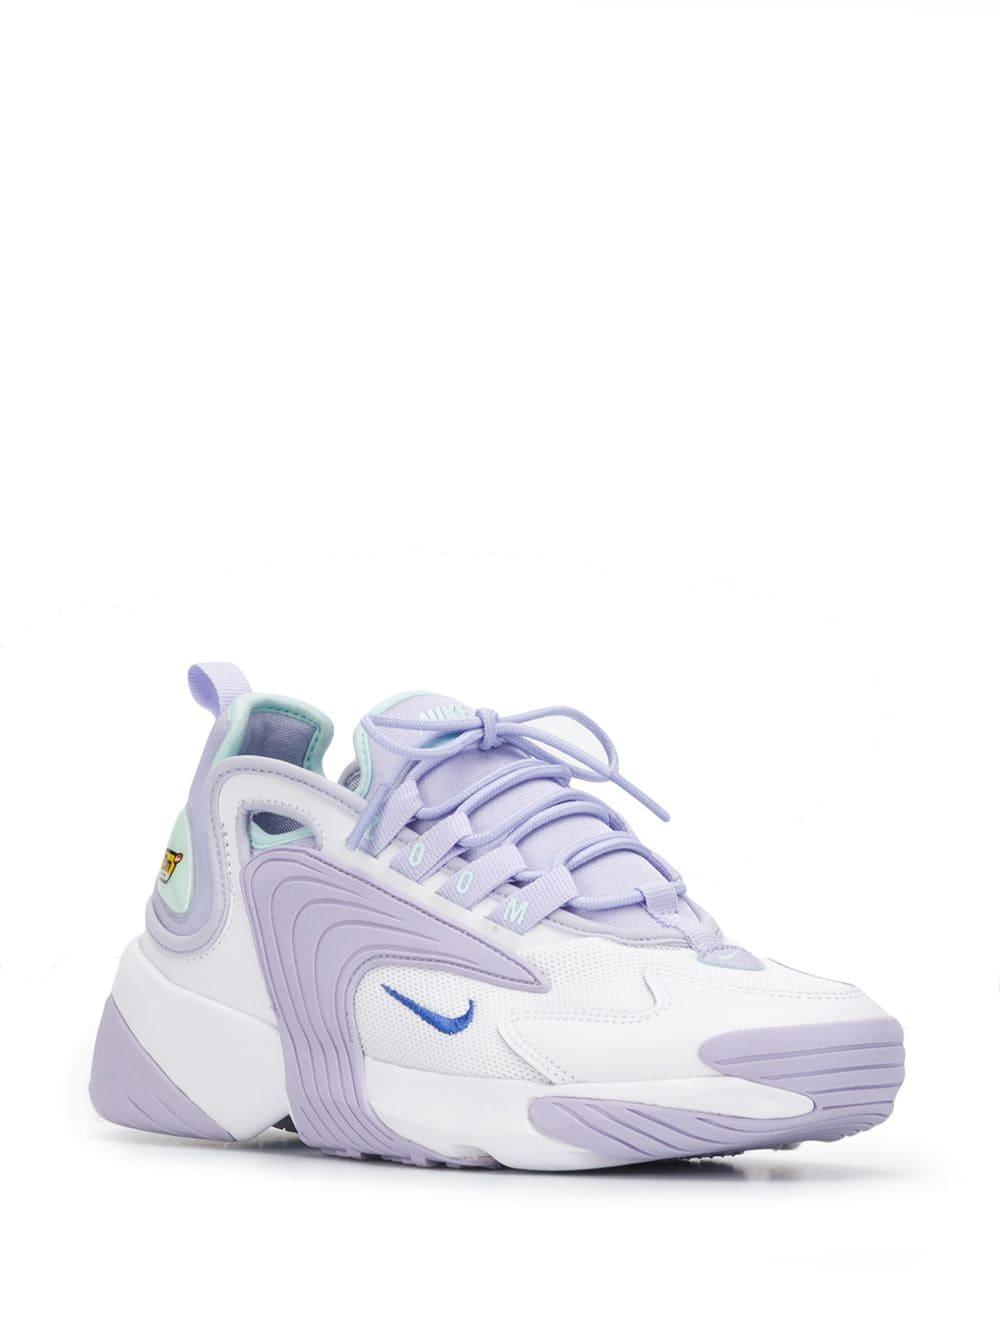 Marty Fielding Abuelo organizar Nike Lilac Zoom 2k Sneakers in Purple | Lyst